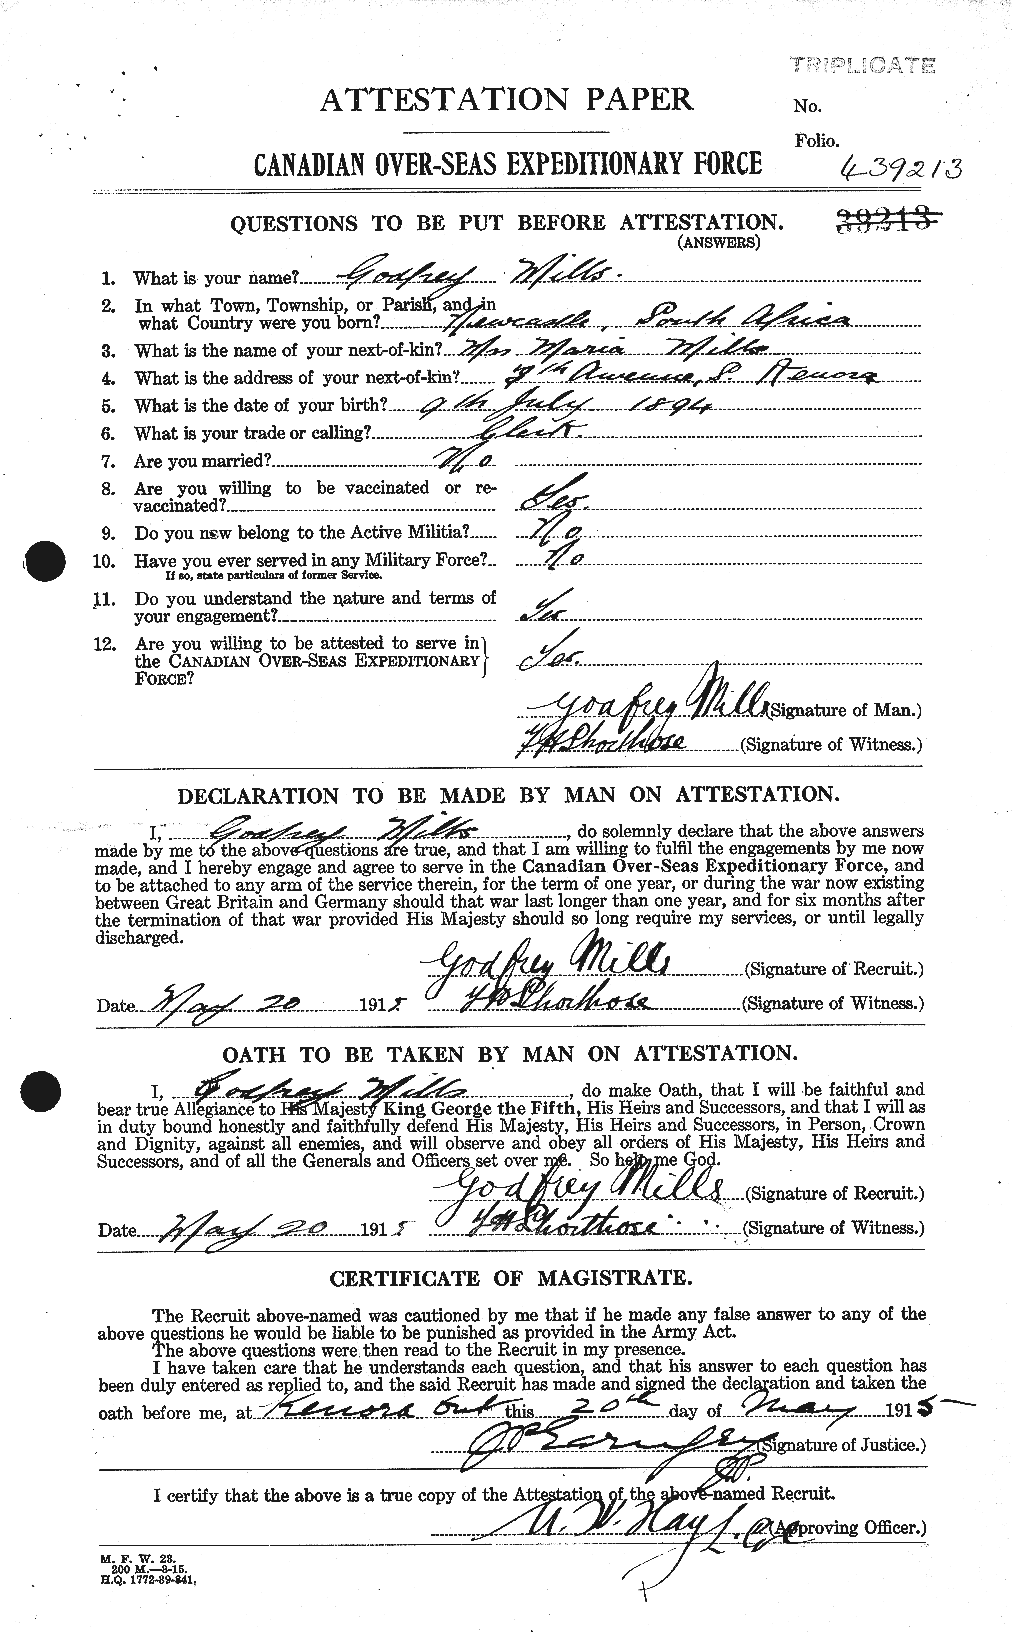 Dossiers du Personnel de la Première Guerre mondiale - CEC 498220a